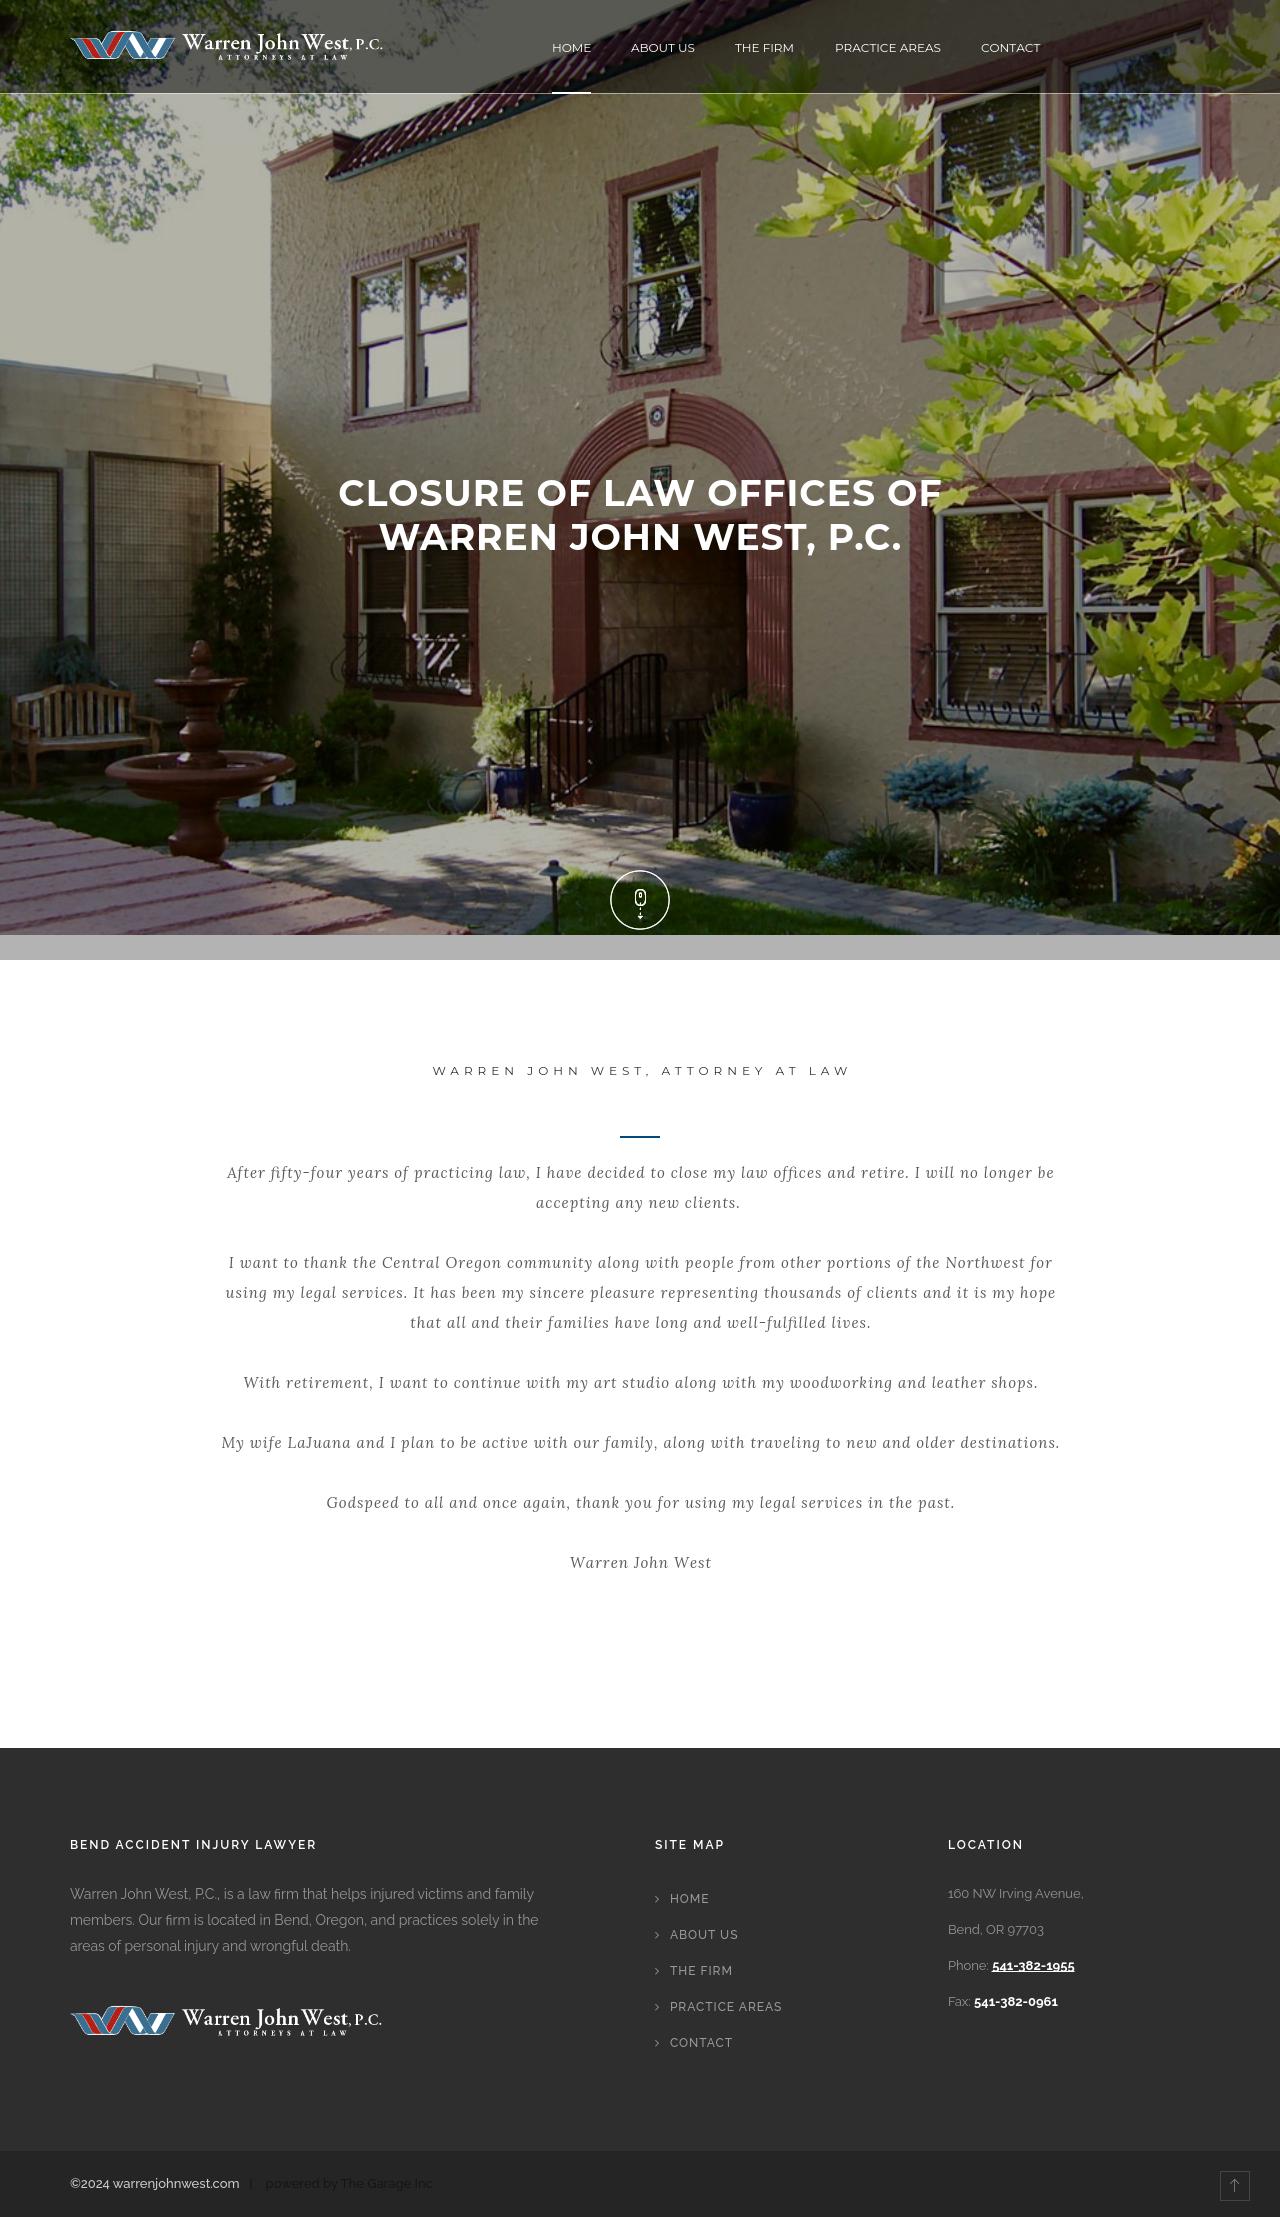 Warren John West, P.C. - Bend OR Lawyers